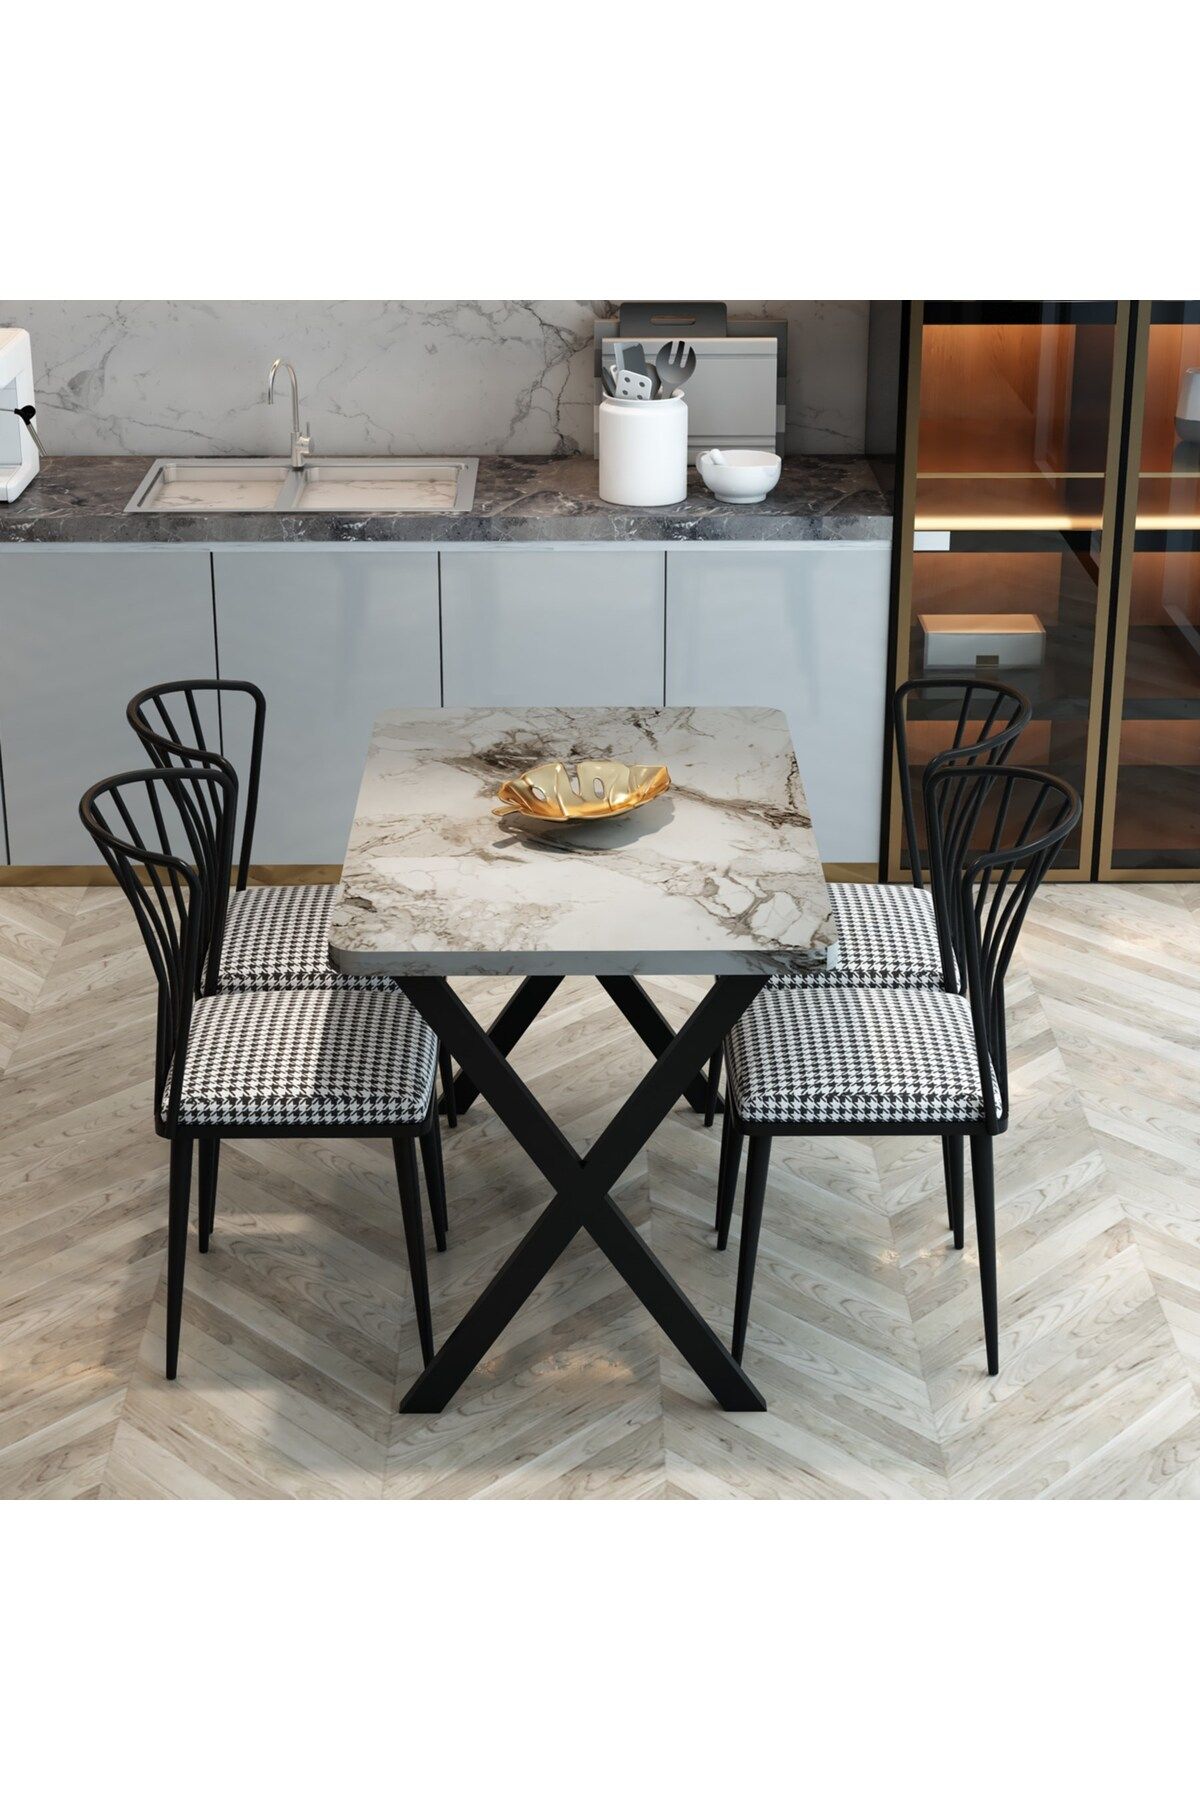 FurnatureDesign Yemek Masası Takımı X Ayaklı Yemek Masası 70x110 + 4 Adet Sandalye - Efes